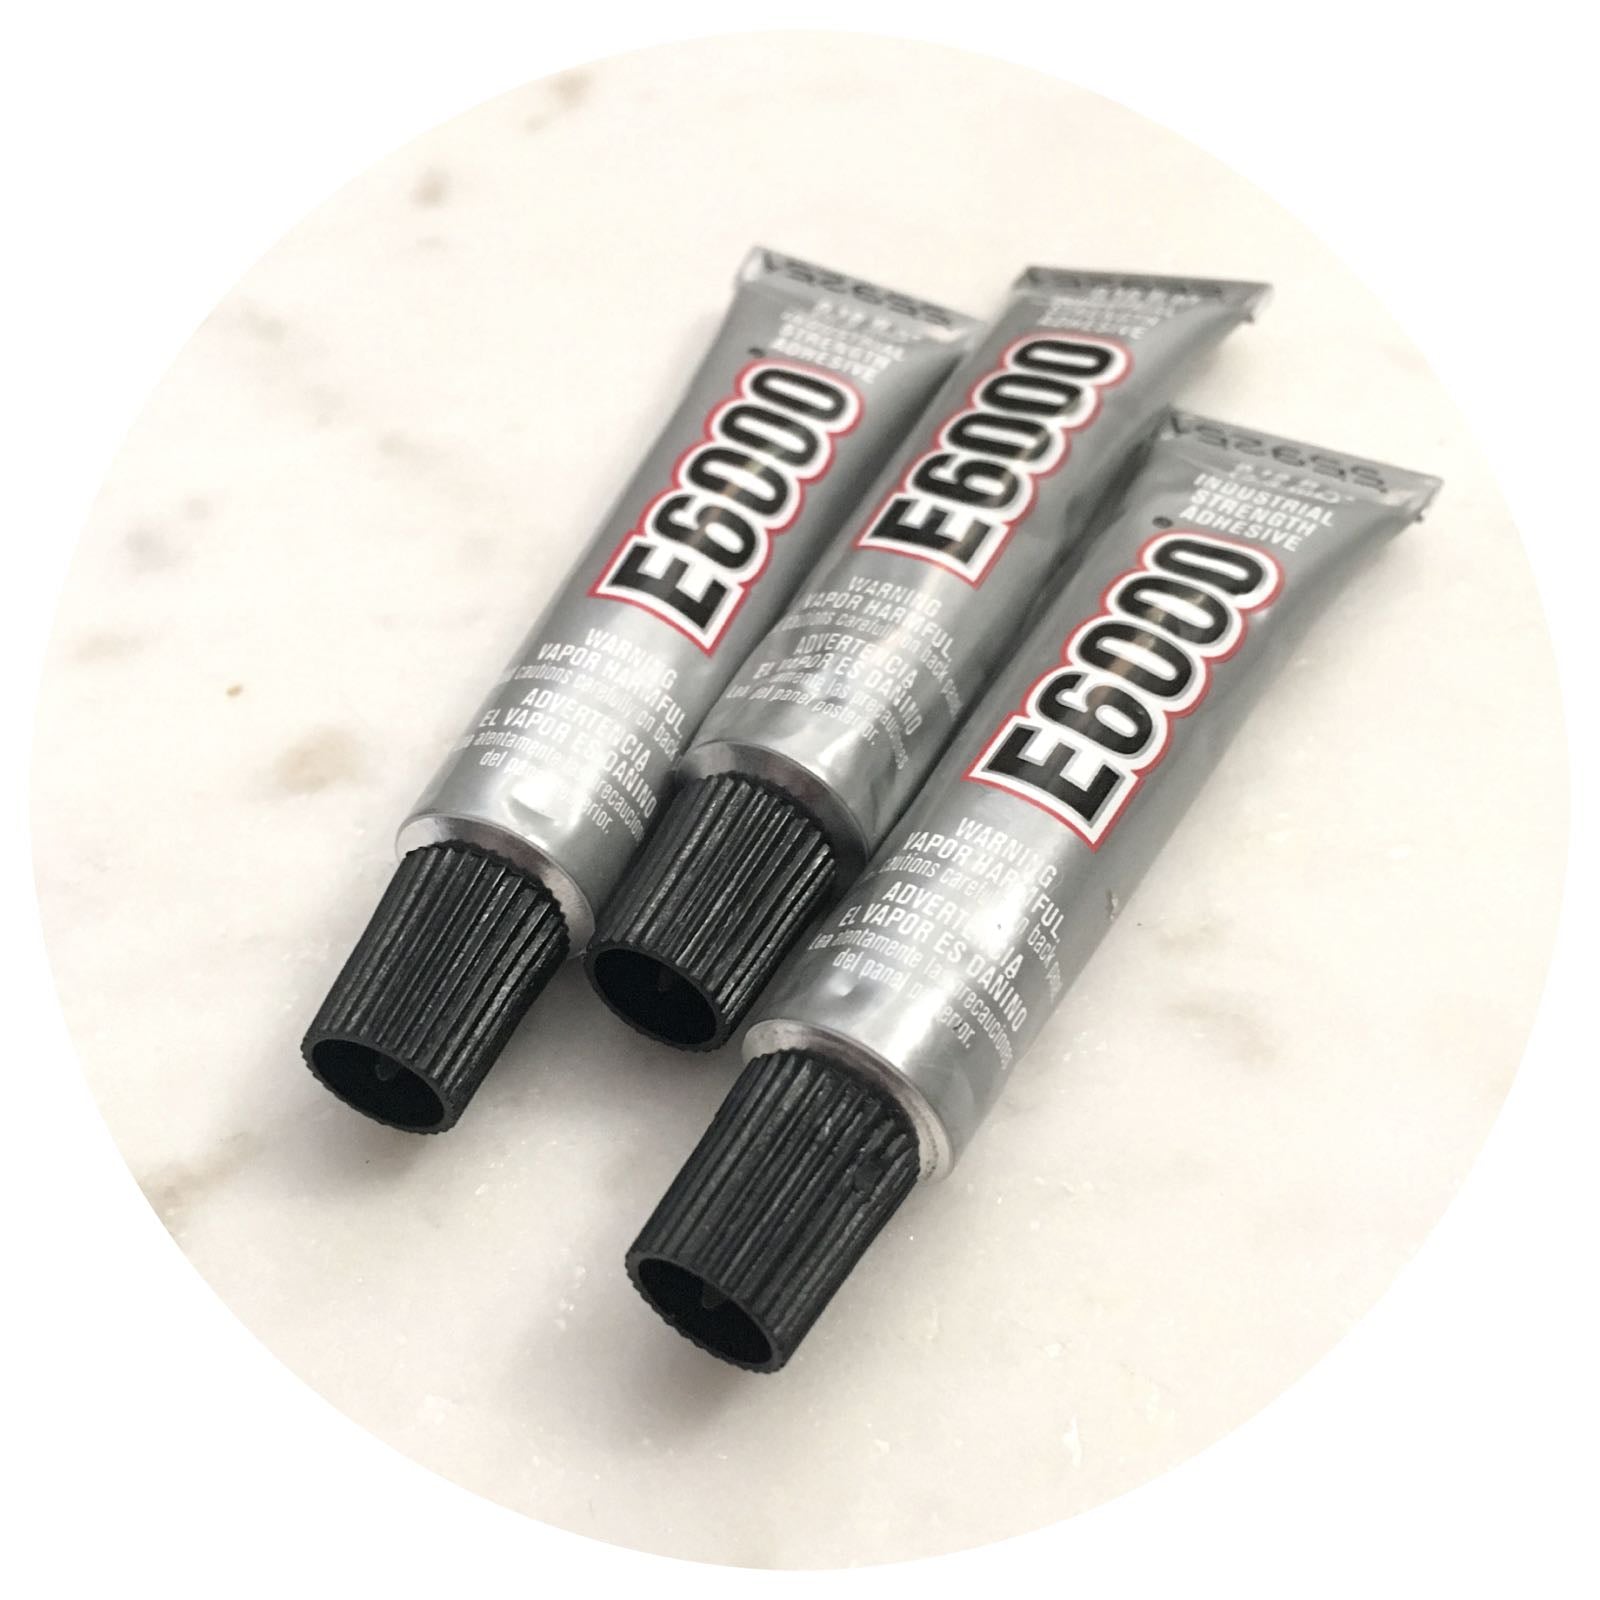 E6000 Glue Adhesive with Precision Tips - 40.2g - Each - AJ Craft Supplies